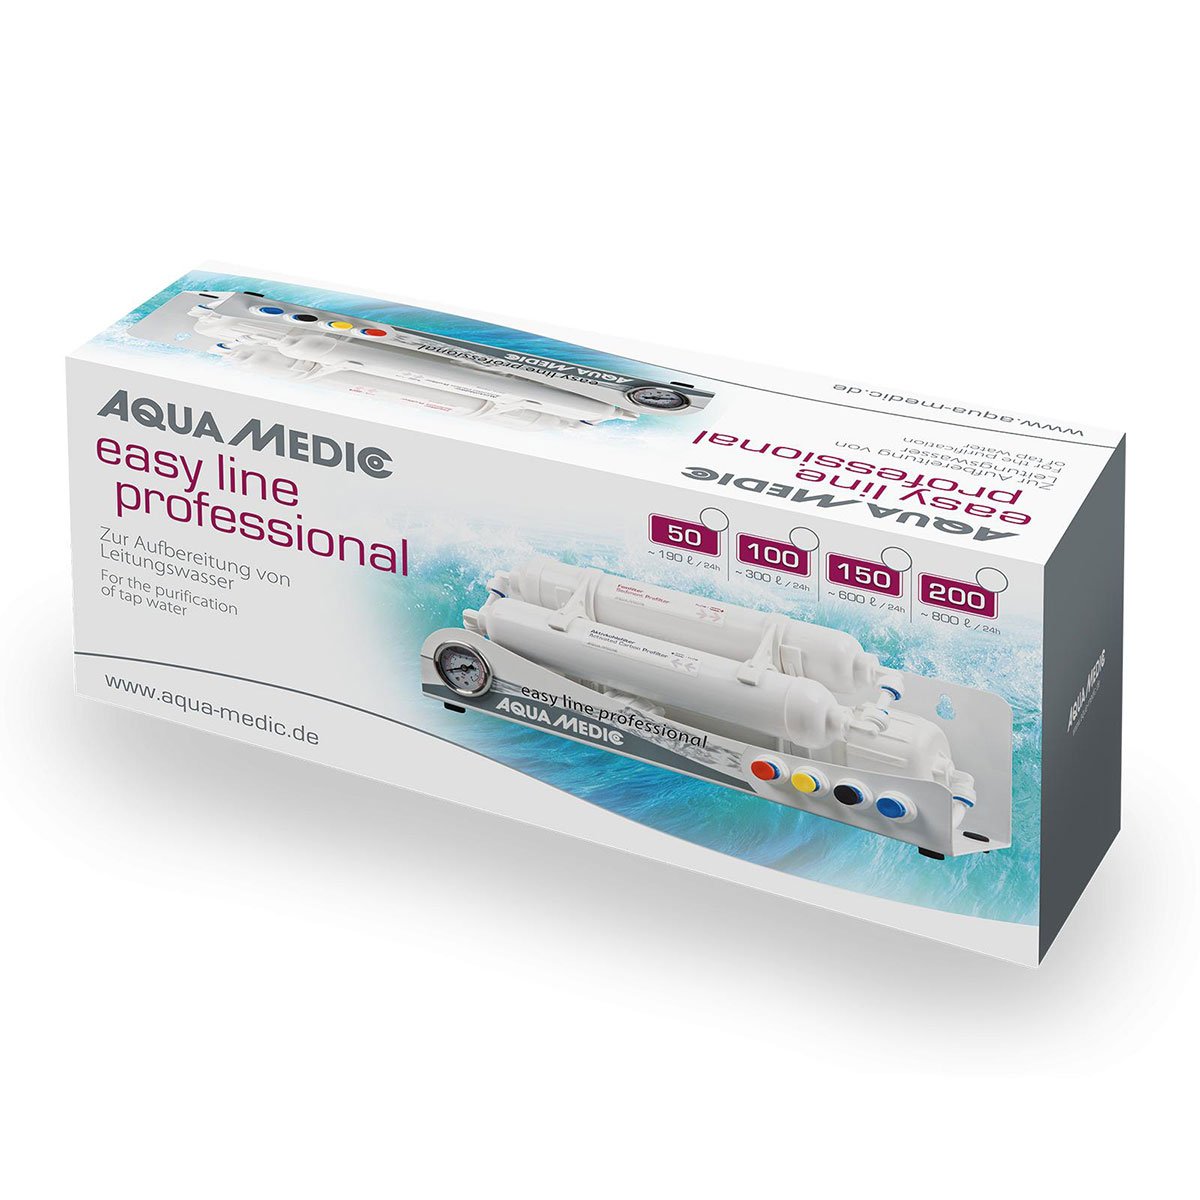 Aqua Medic Osmoseanlage easy line professional 150GPD von Aqua Medic